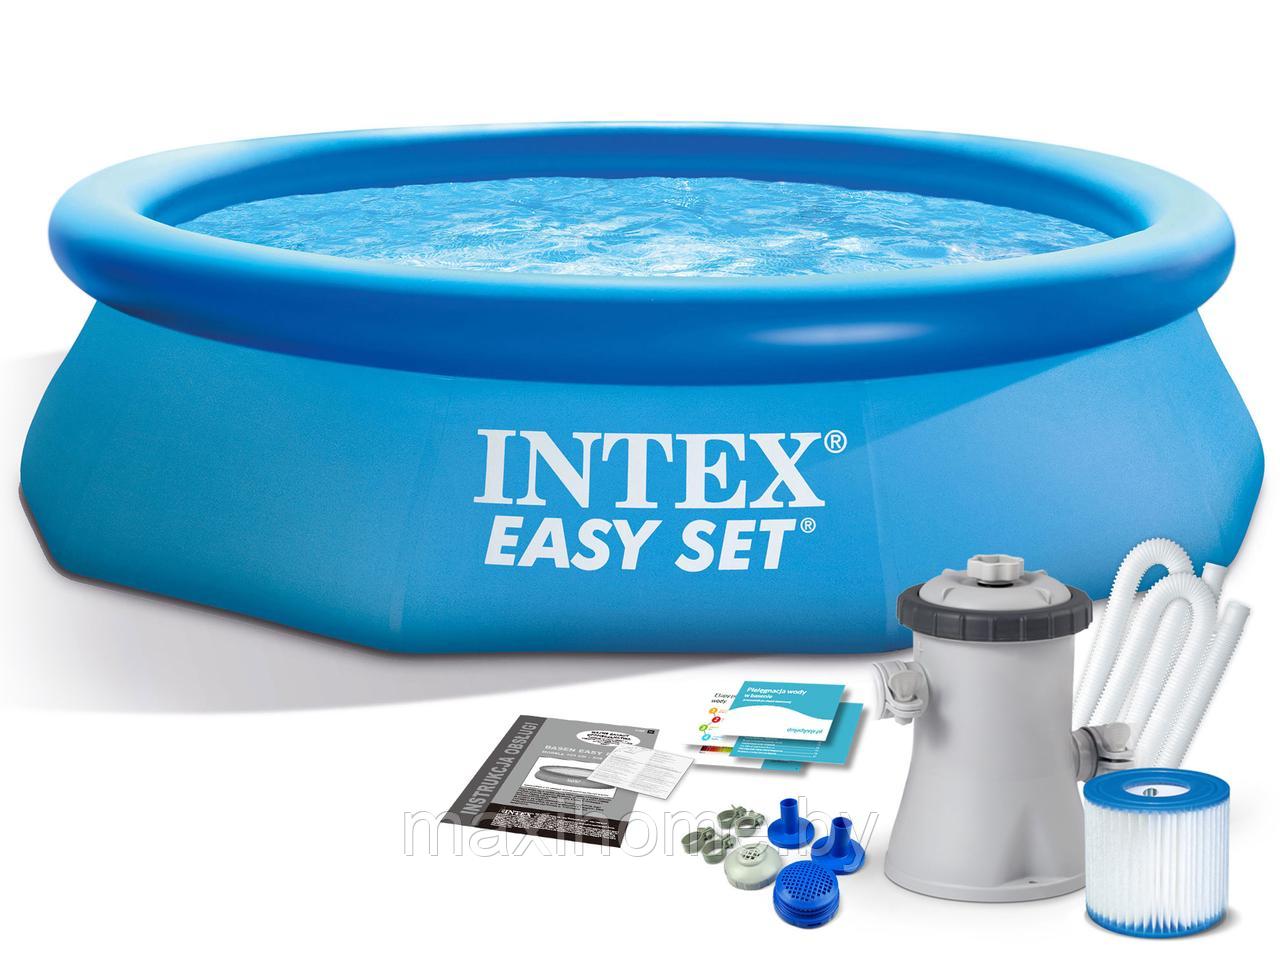 Надувной бассейн Intex Easy Set 28122 305x76 см